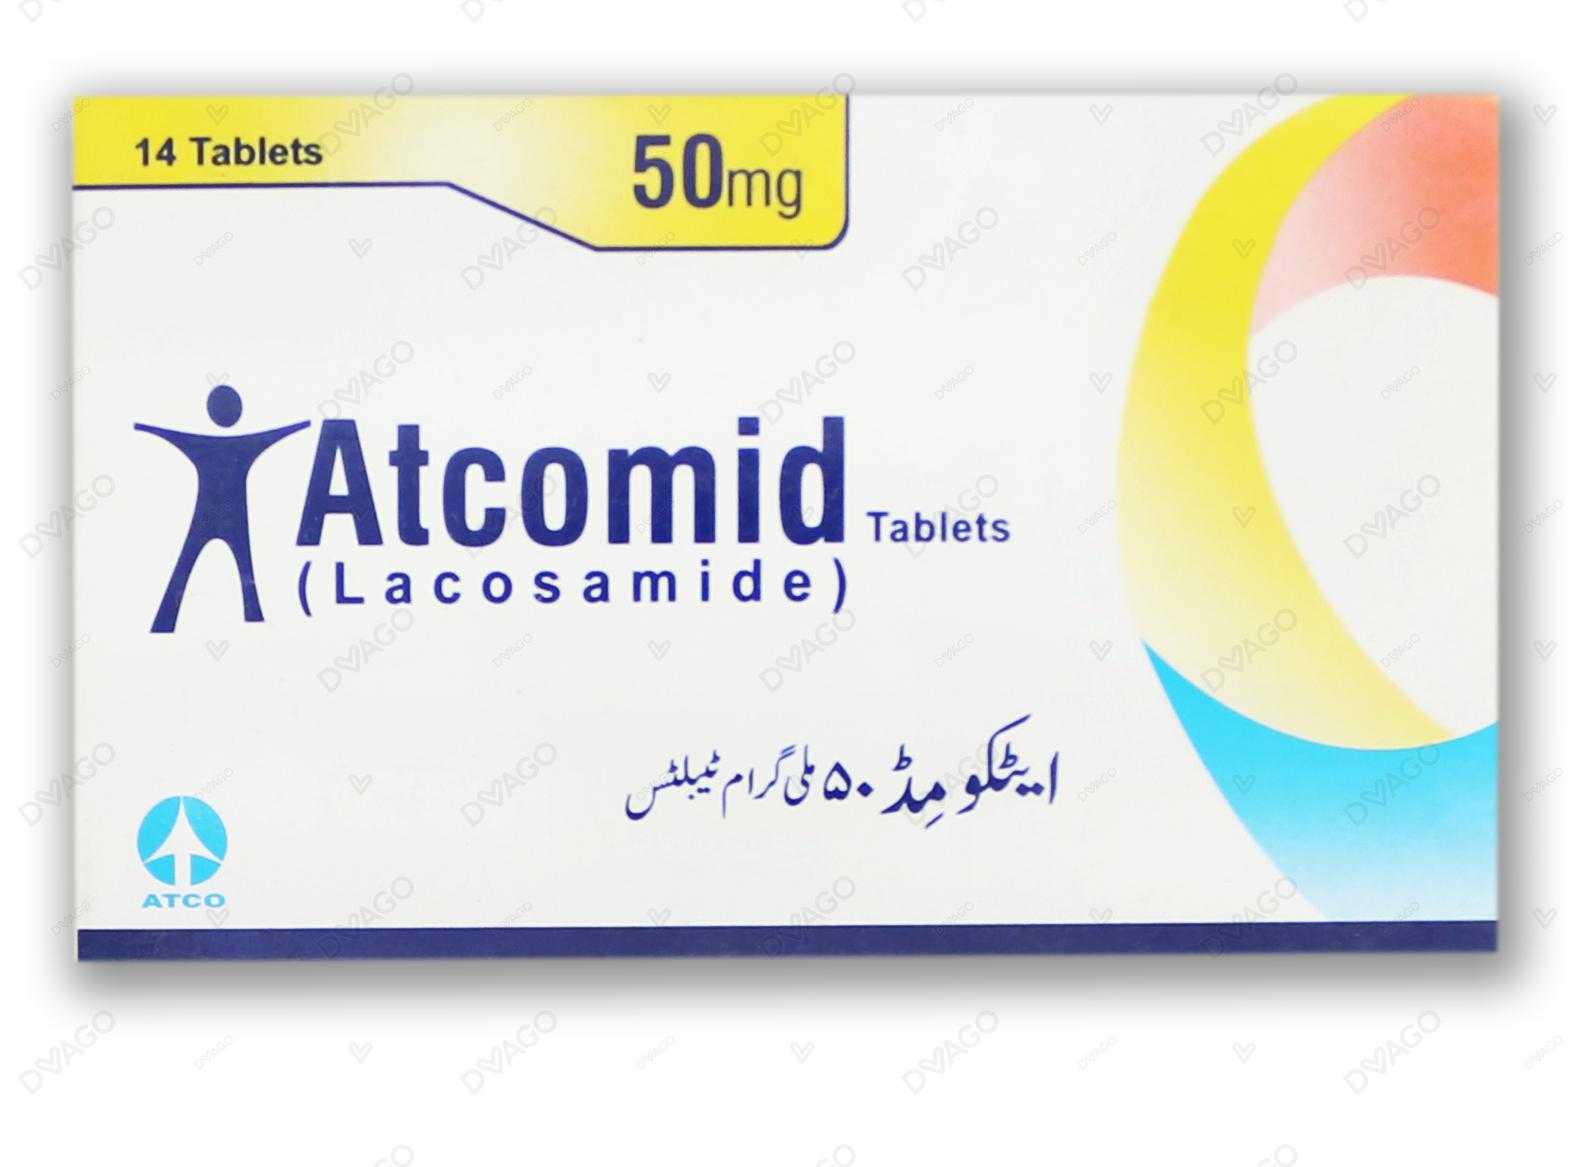 atcomid tablets 50mg